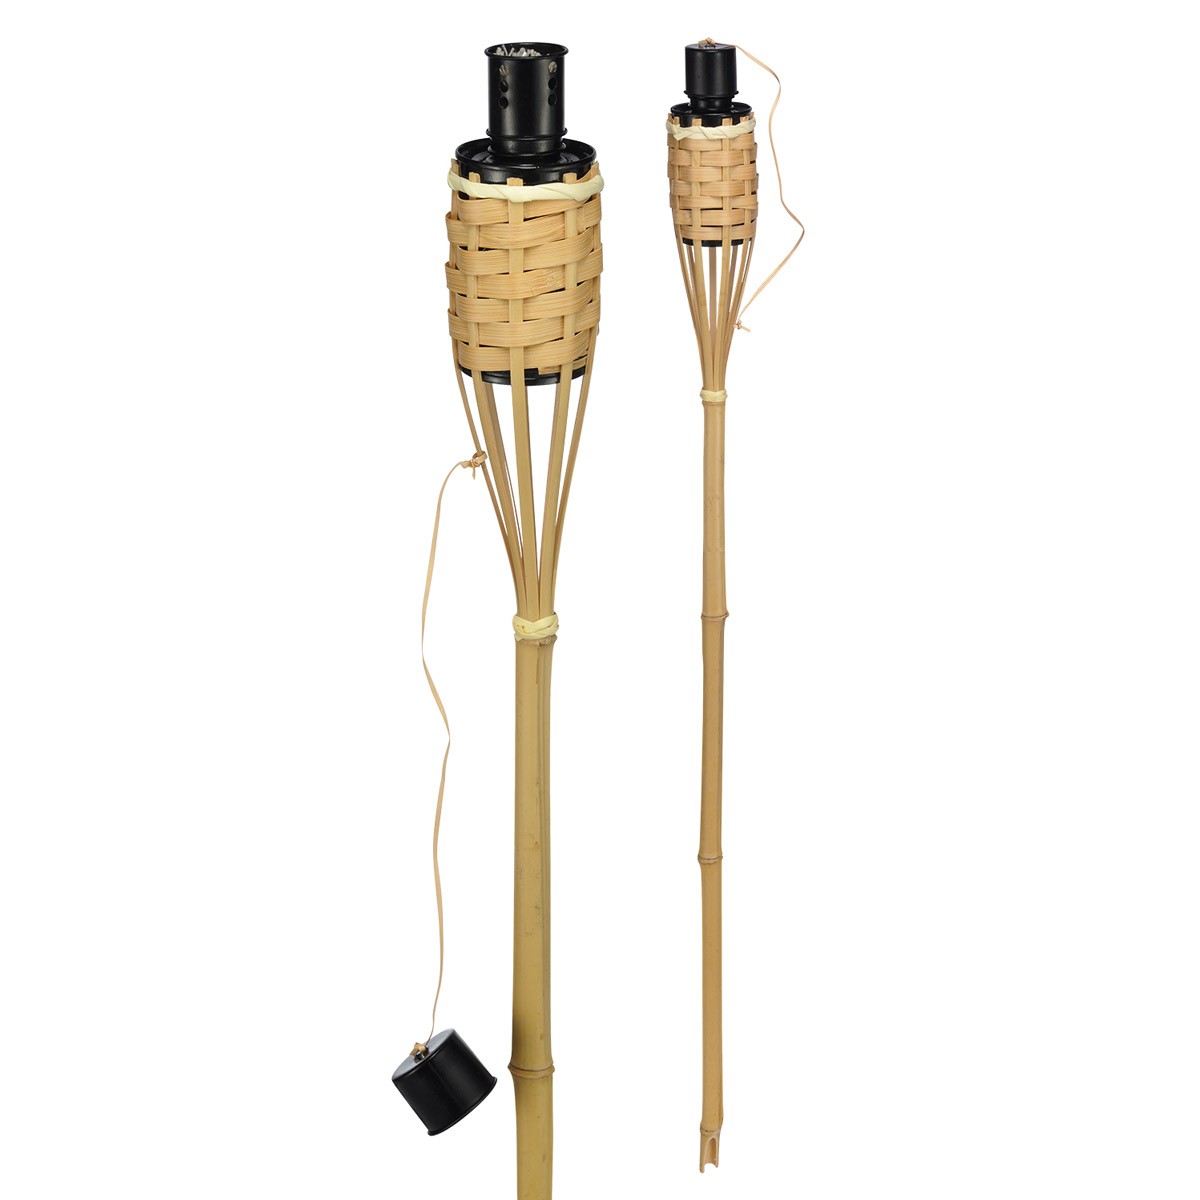 Gartenfackel Bambus – 60cm – Fackel aus Naturmaterialien